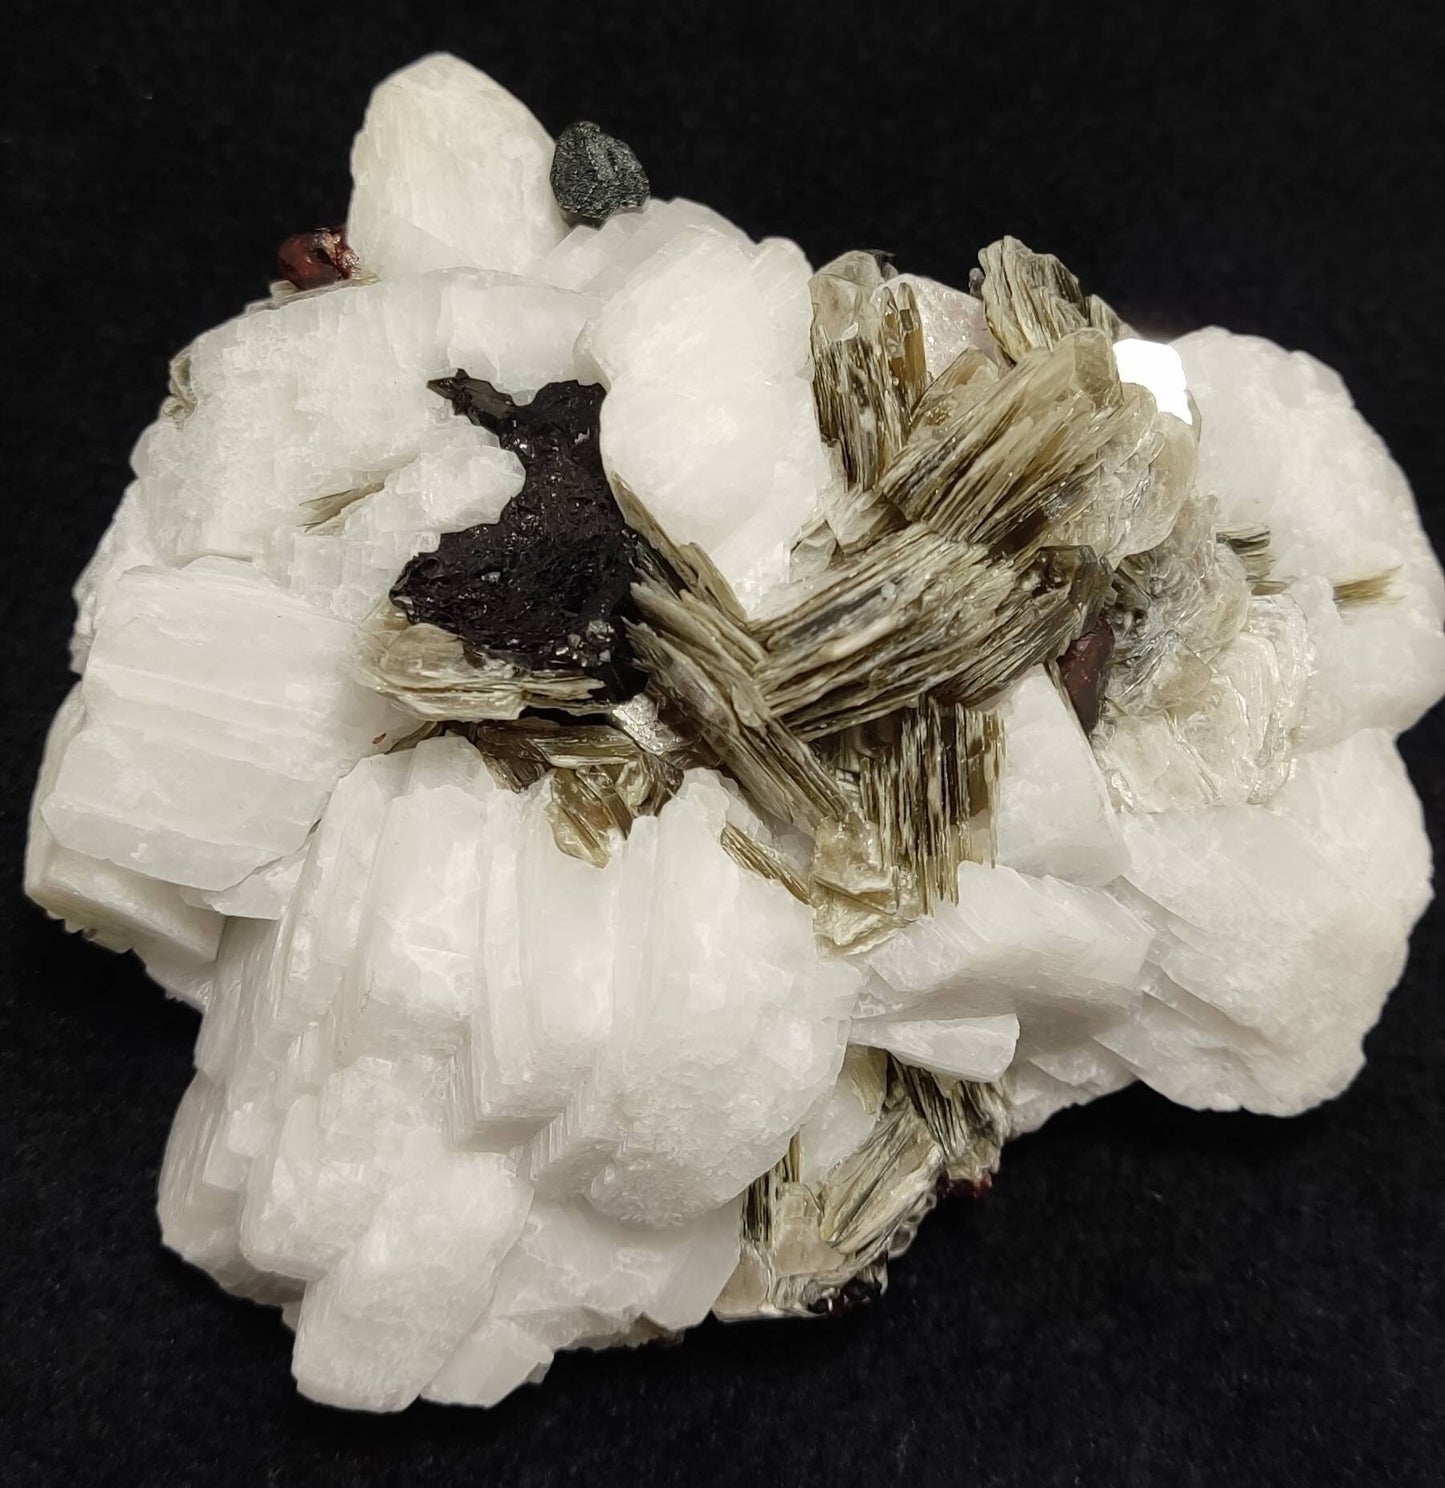 Combo Specimen of black tourmaline, muscovite, with albite/feldspar 436 grams